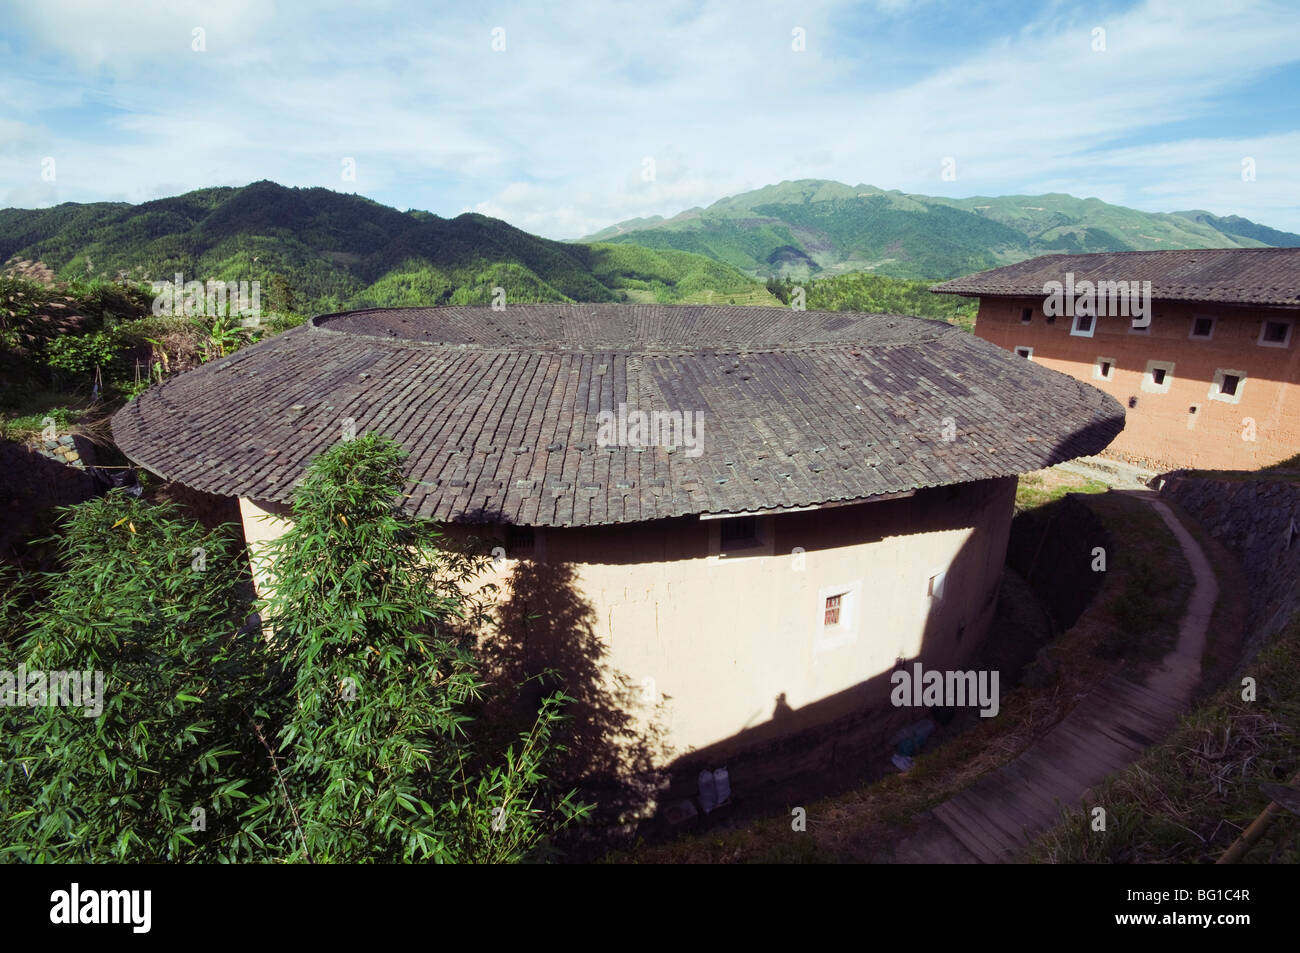 Tulou Hakka terre ronde bâtiments, Site du patrimoine mondial de l'UNESCO, la province de Fujian, Chine, Asie Banque D'Images